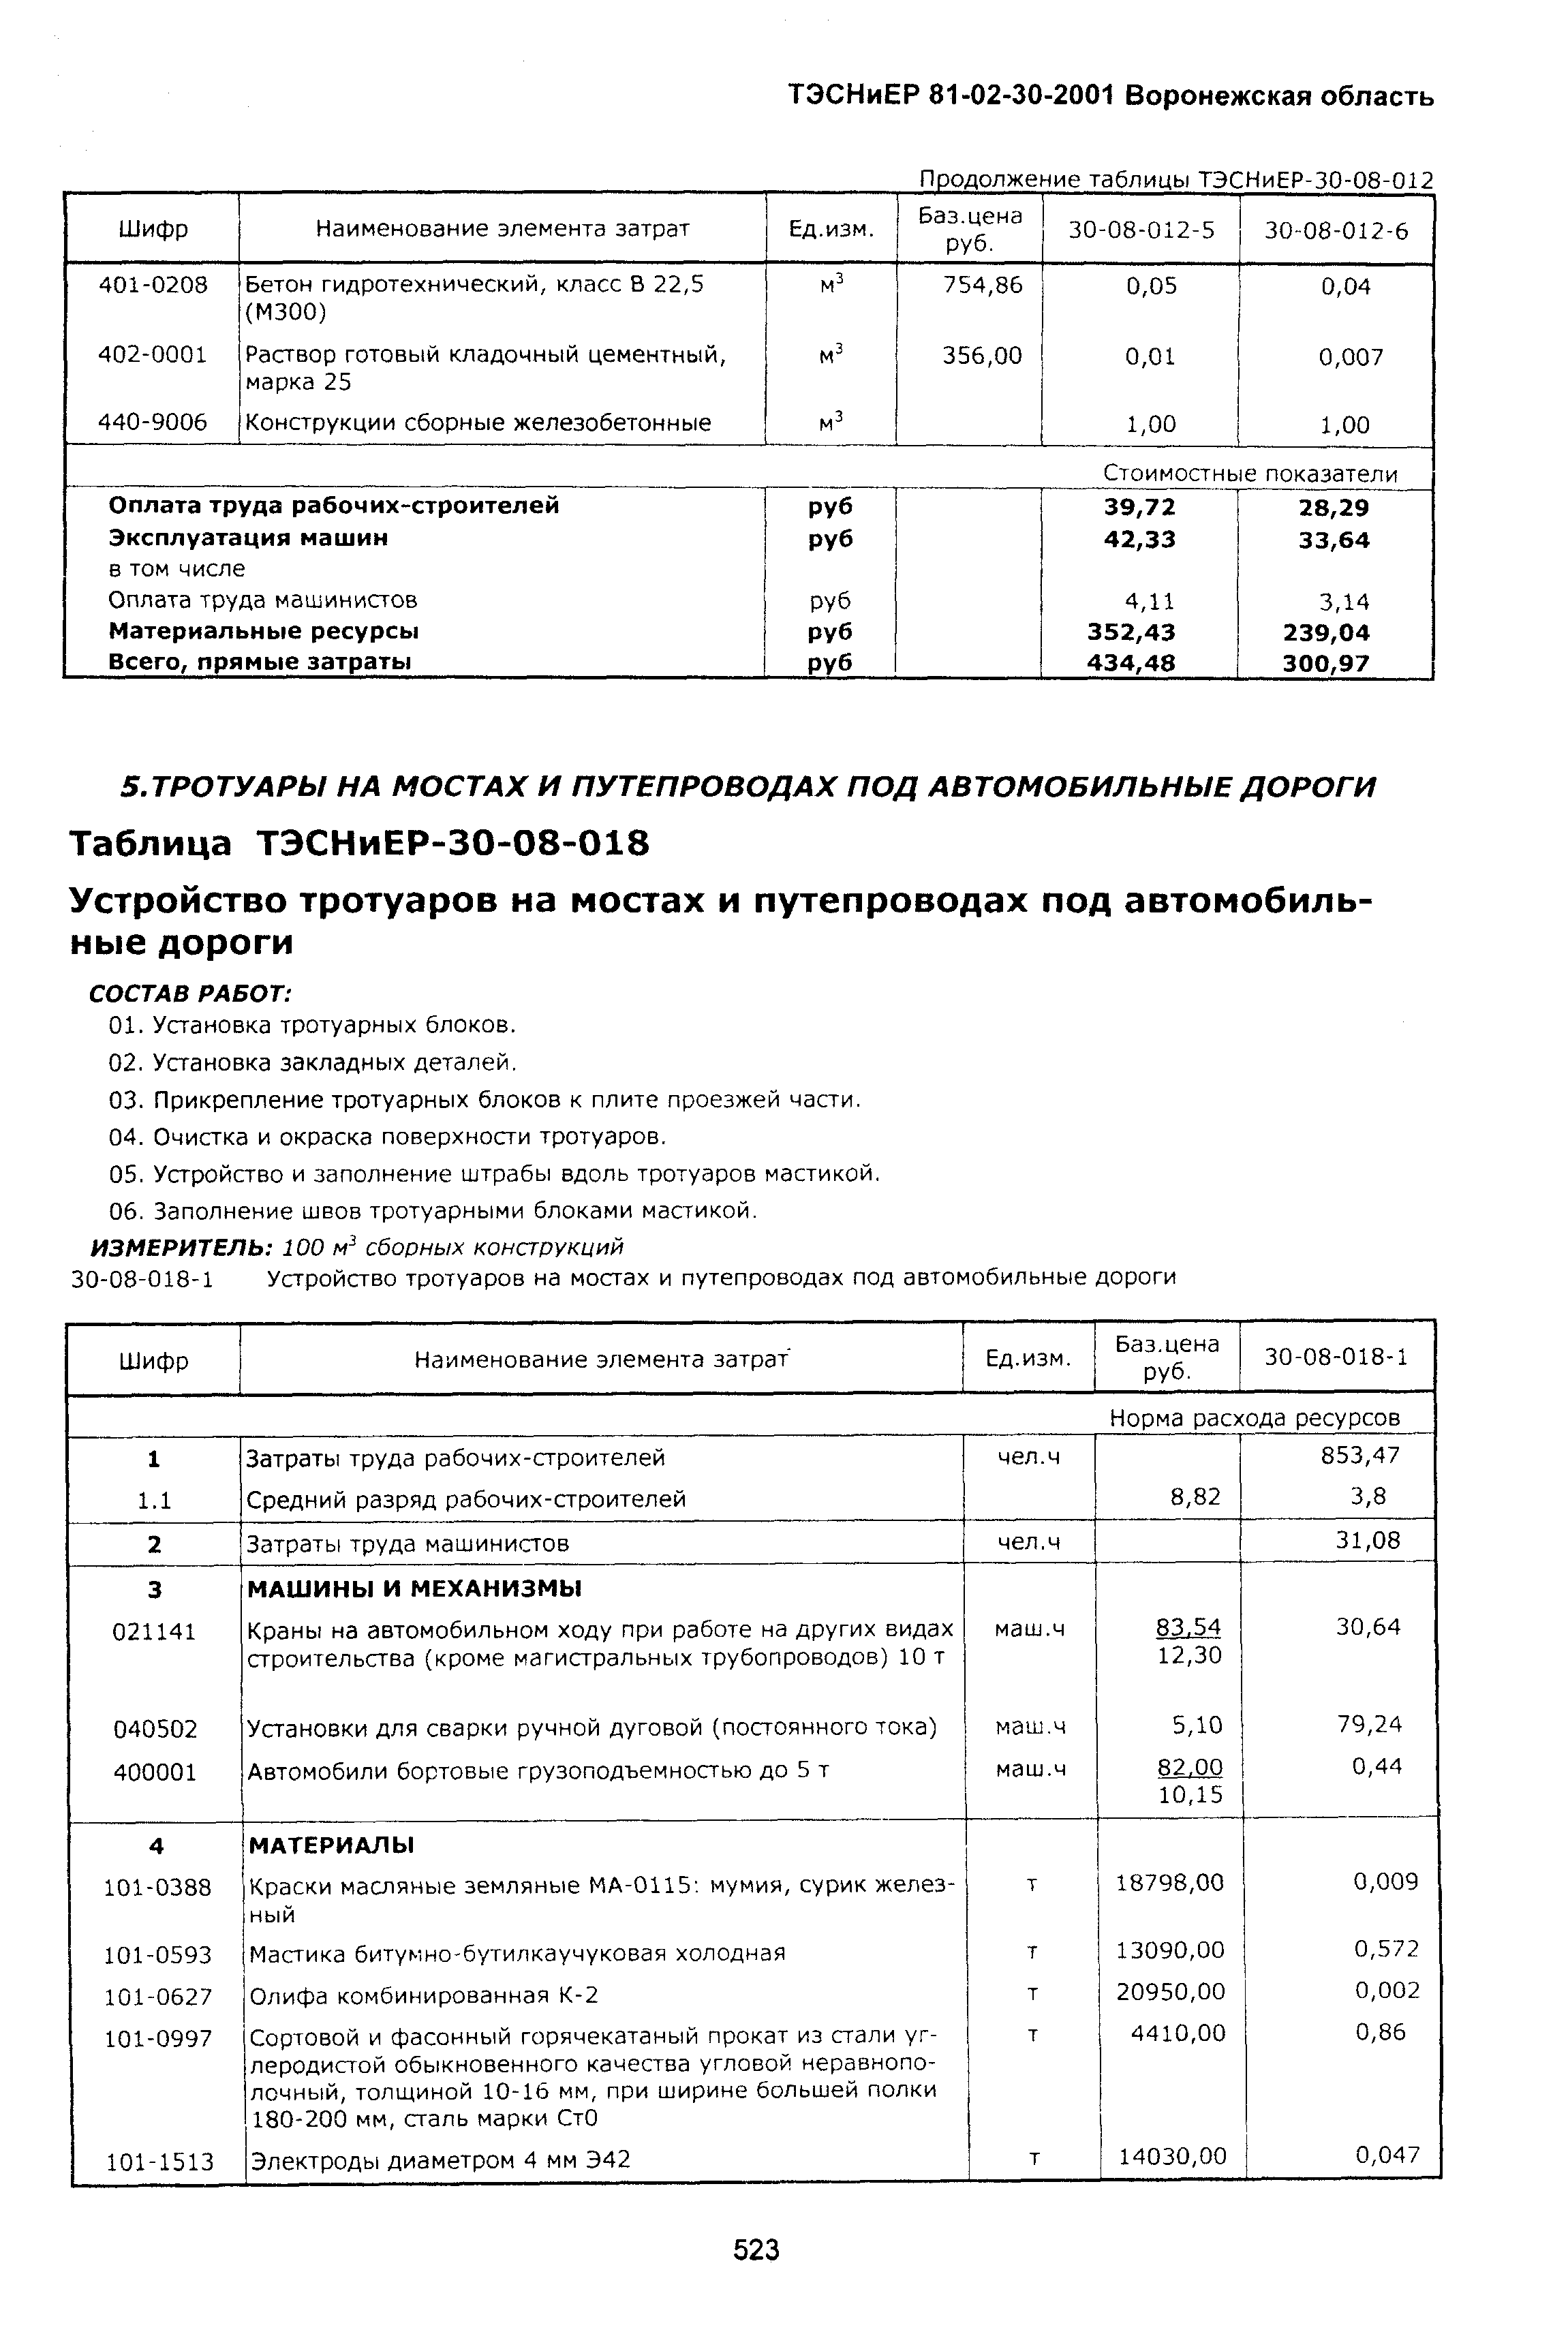 ТЭСНиЕР Воронежской области 81-02-30-2001